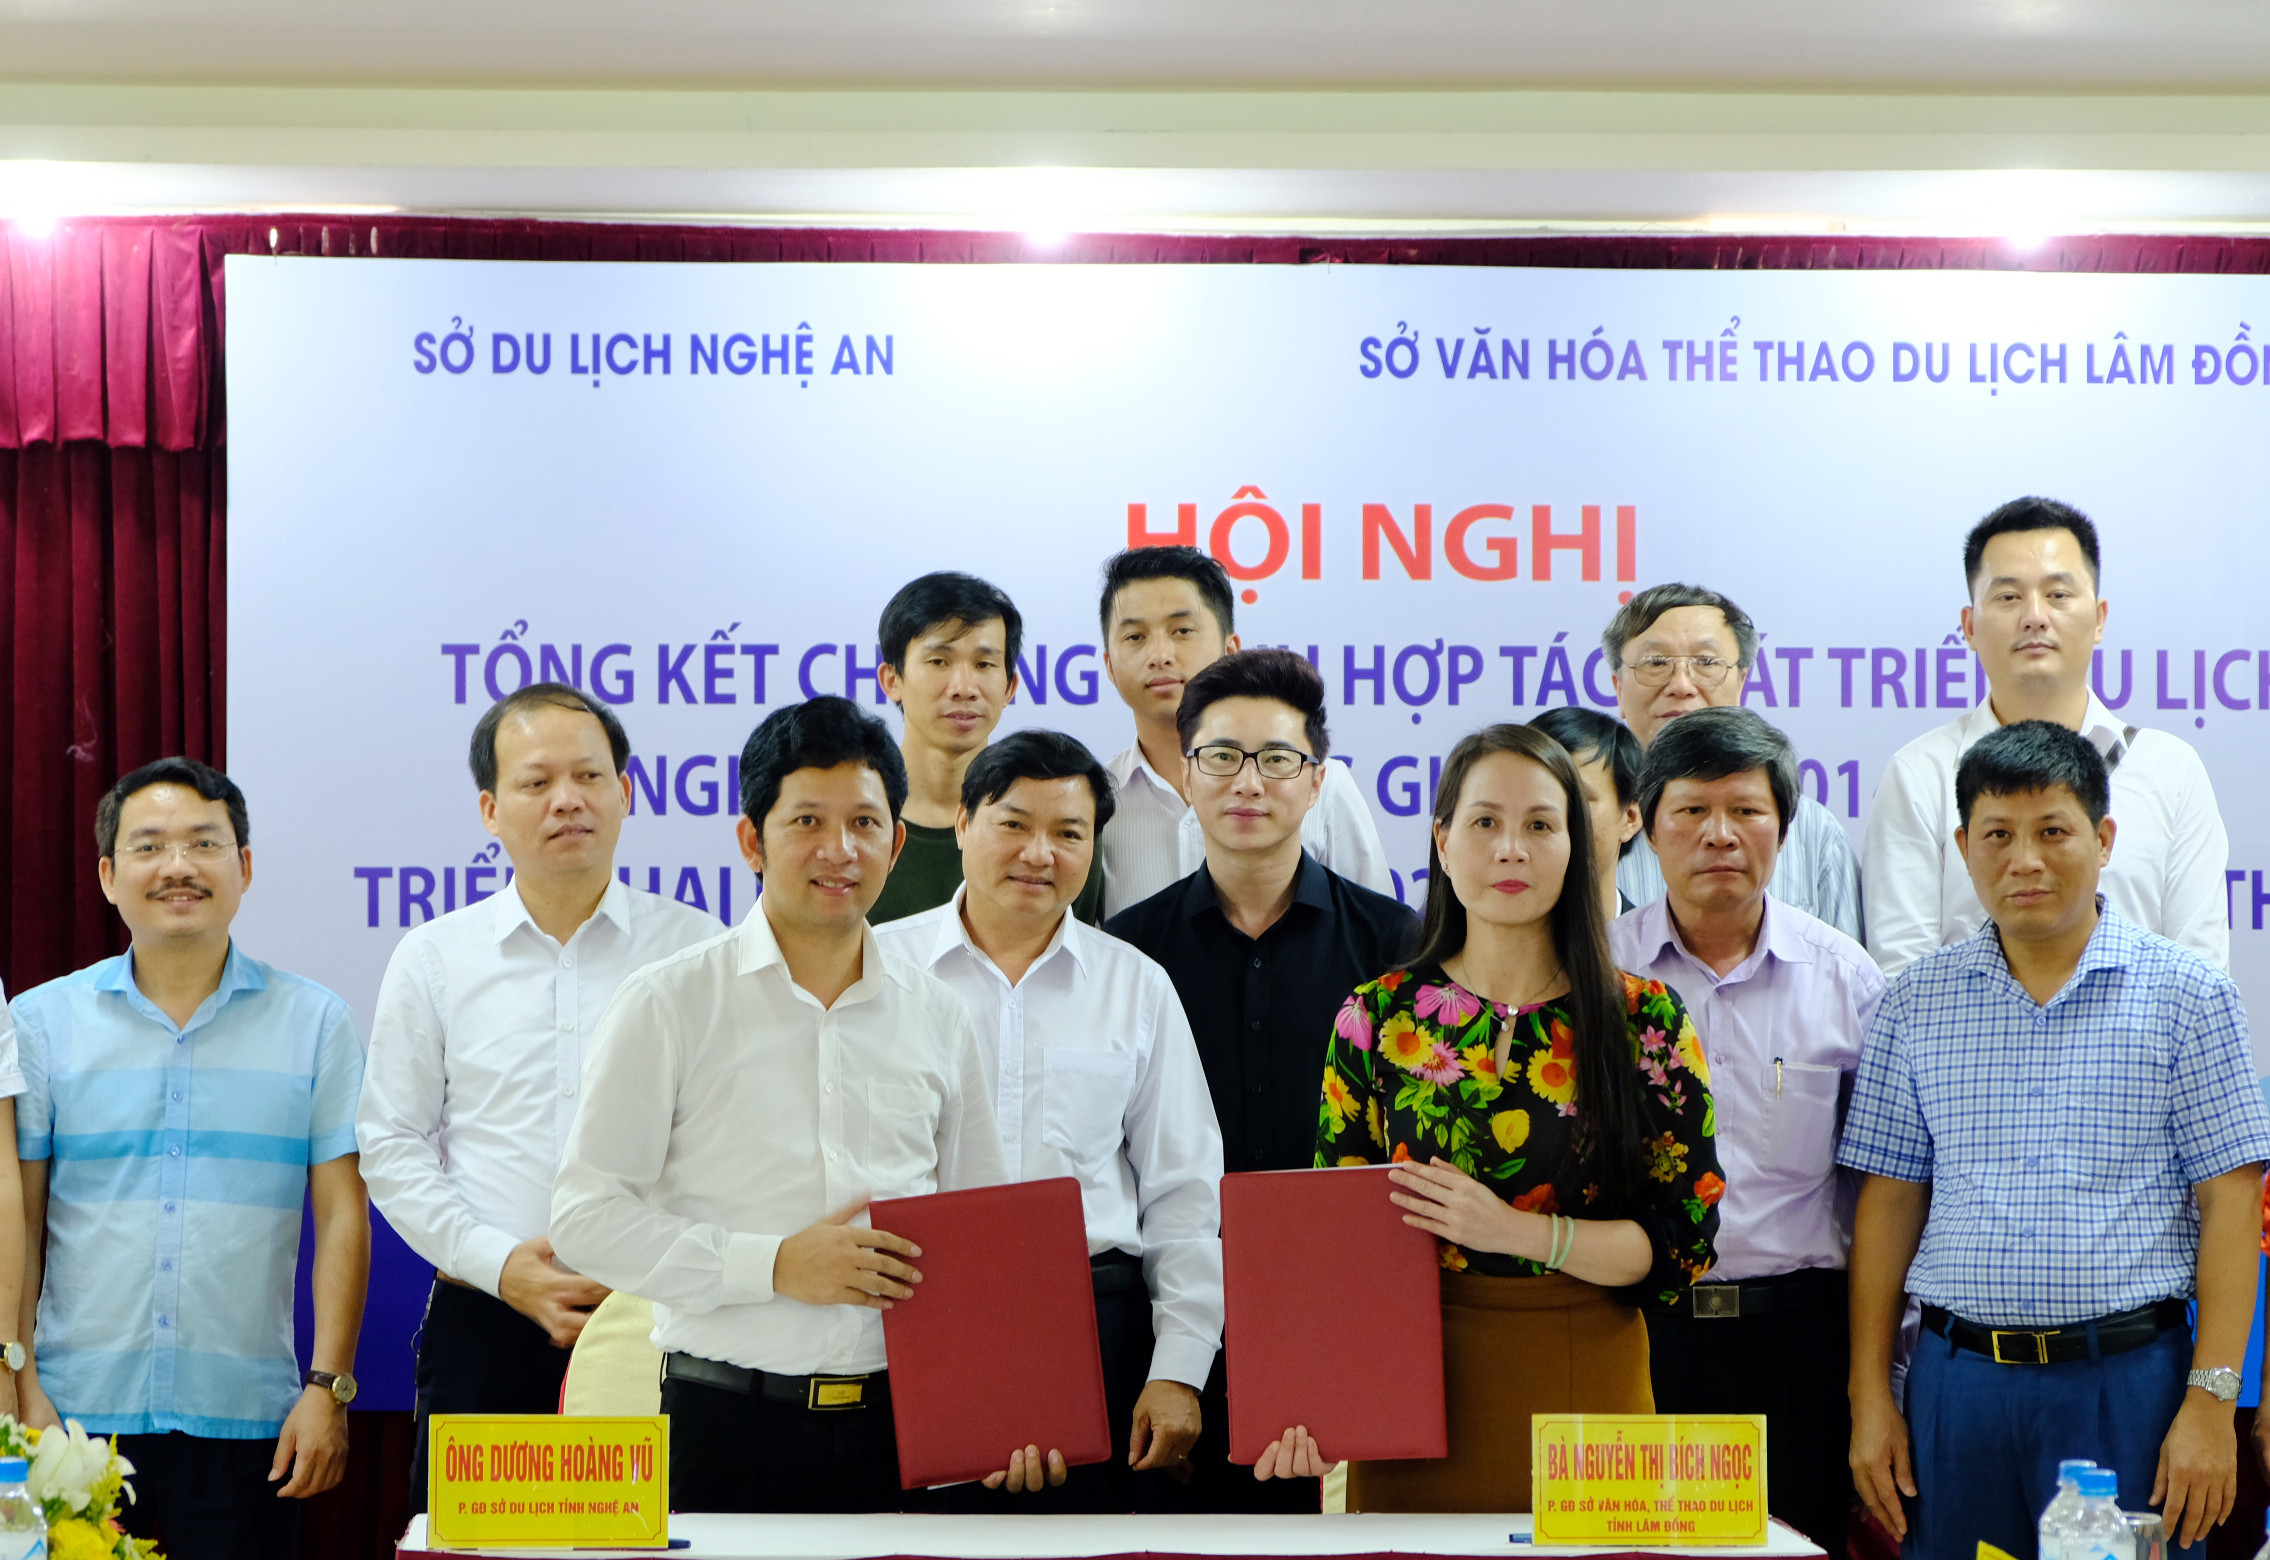 Đại diện hai tỉnh Nghệ An và Lâm Đồng ký kết chương trình hợp tác phát triển du lịch. Ảnh: Mỹ Hà.